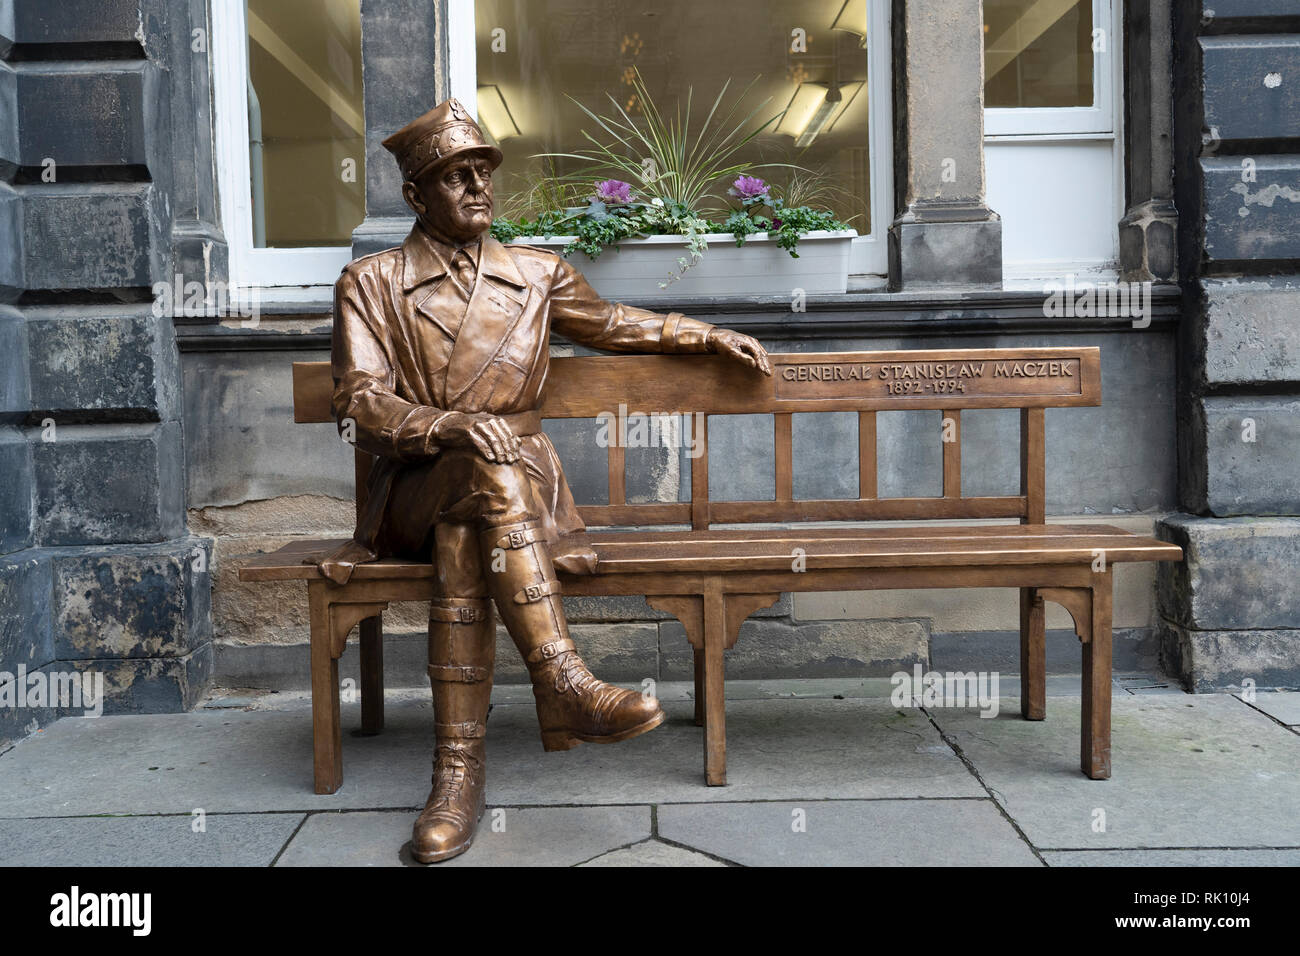 Statue von polnischen Krieg Held General Stanisław Maczek im City Chambers in der Altstadt von Edinburgh, Schottland, Großbritannien Stockfoto